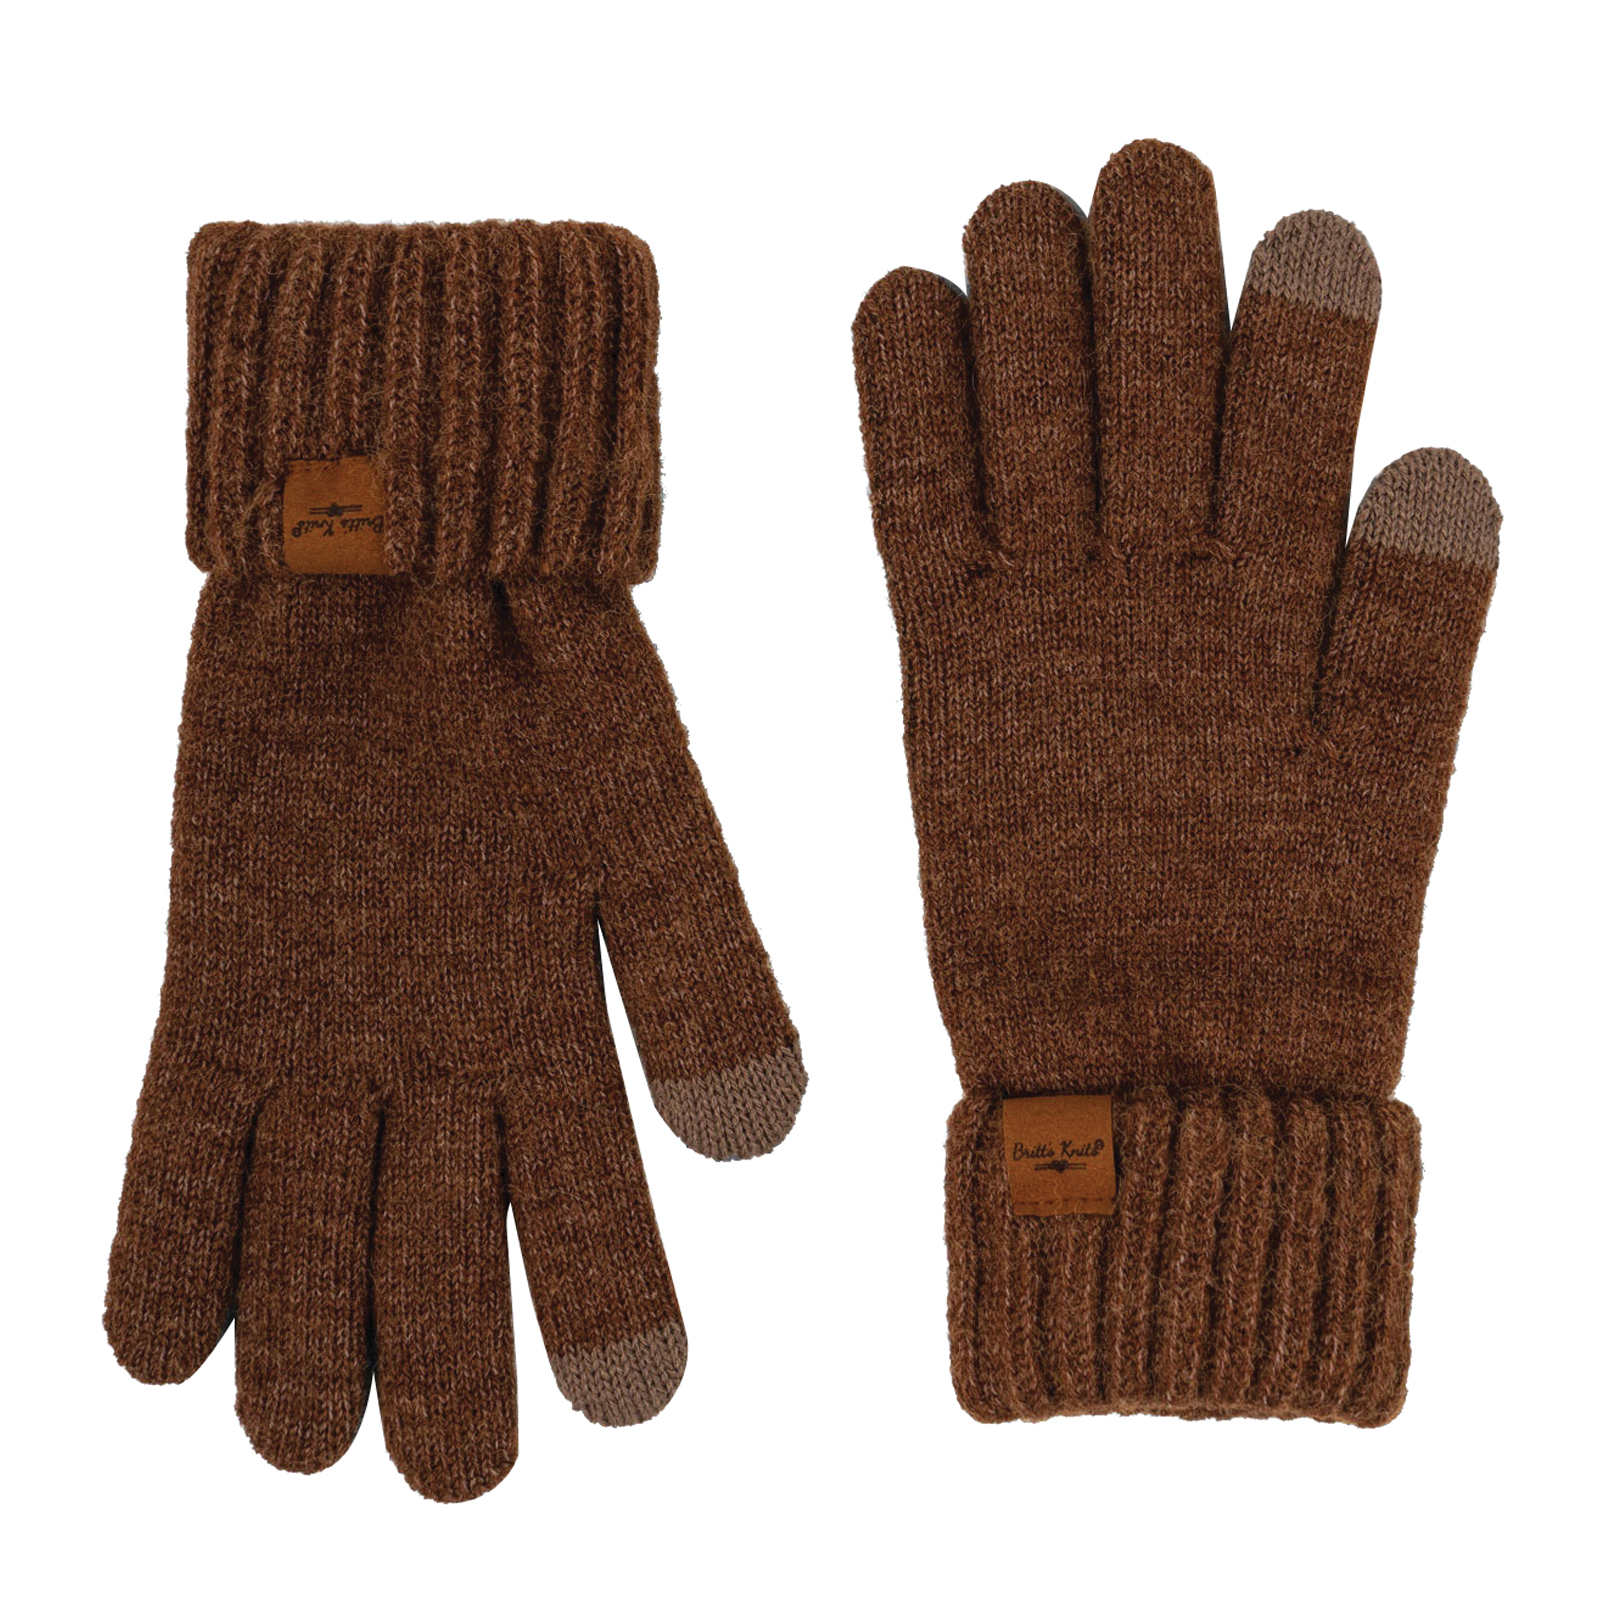 Britt's knits Mainstay Series BKMSG2-BRN Gloves, Brown